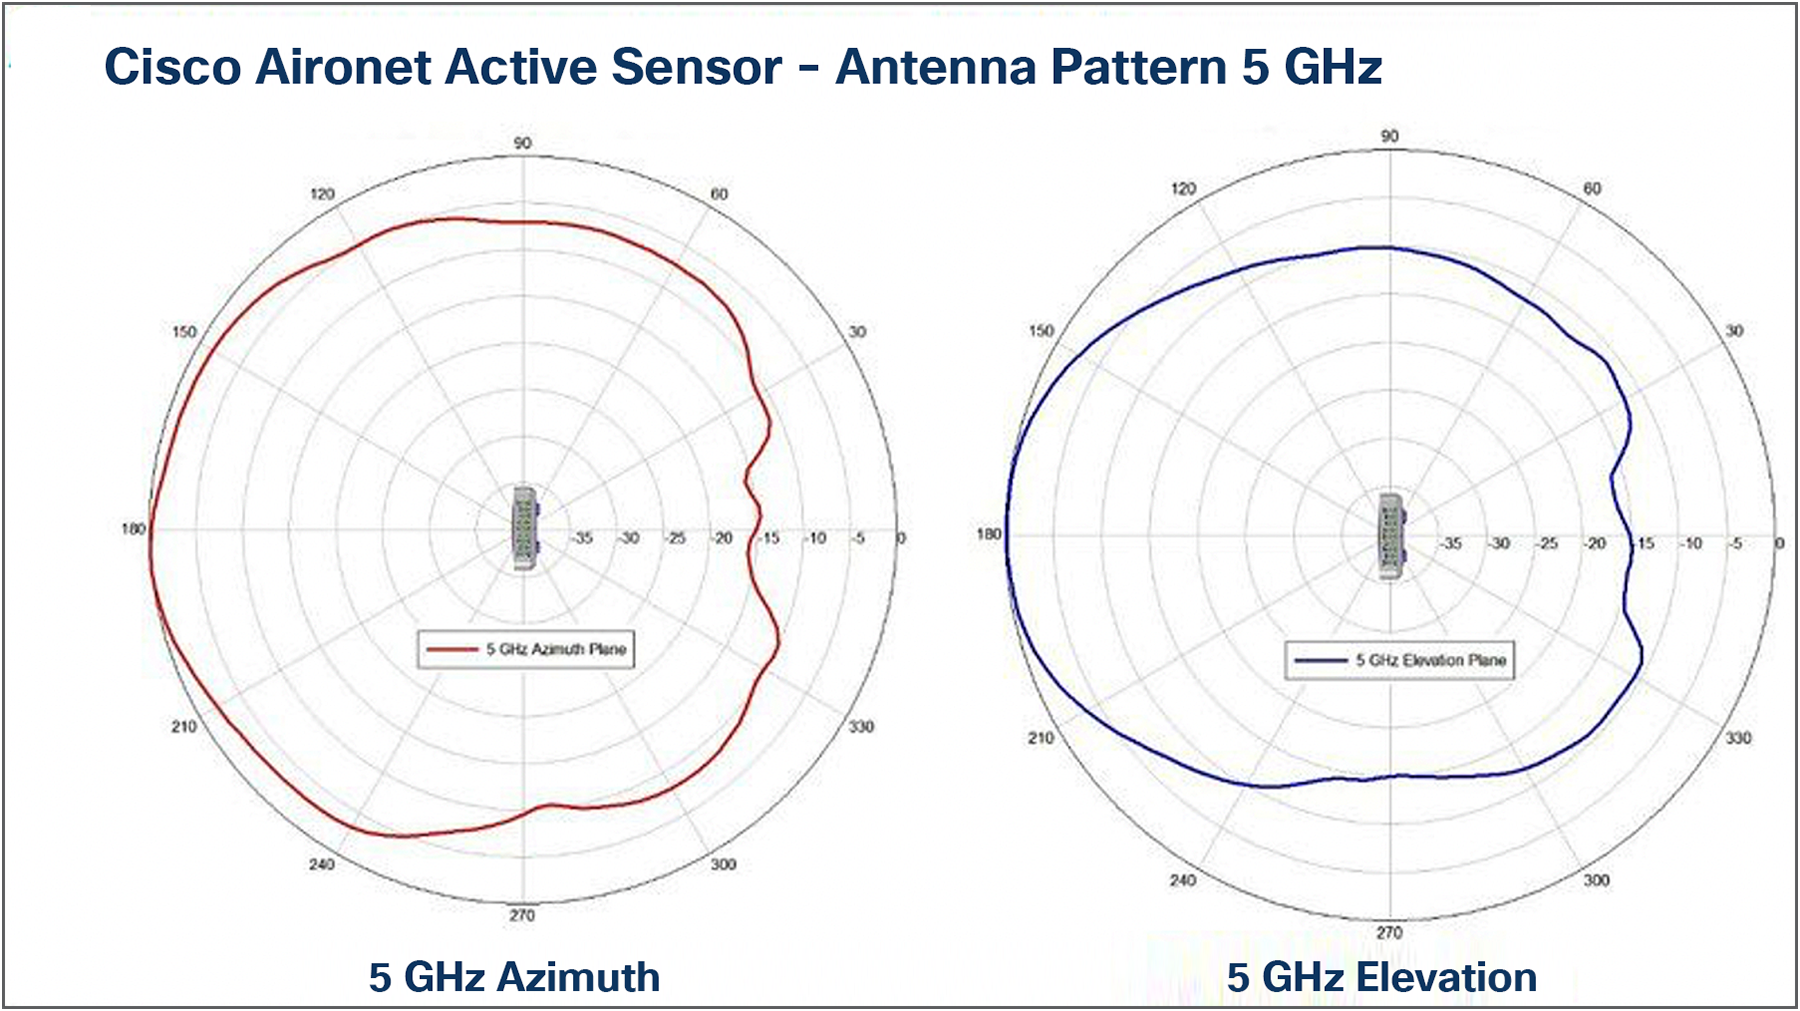 Antenna patterns, 5 GHz